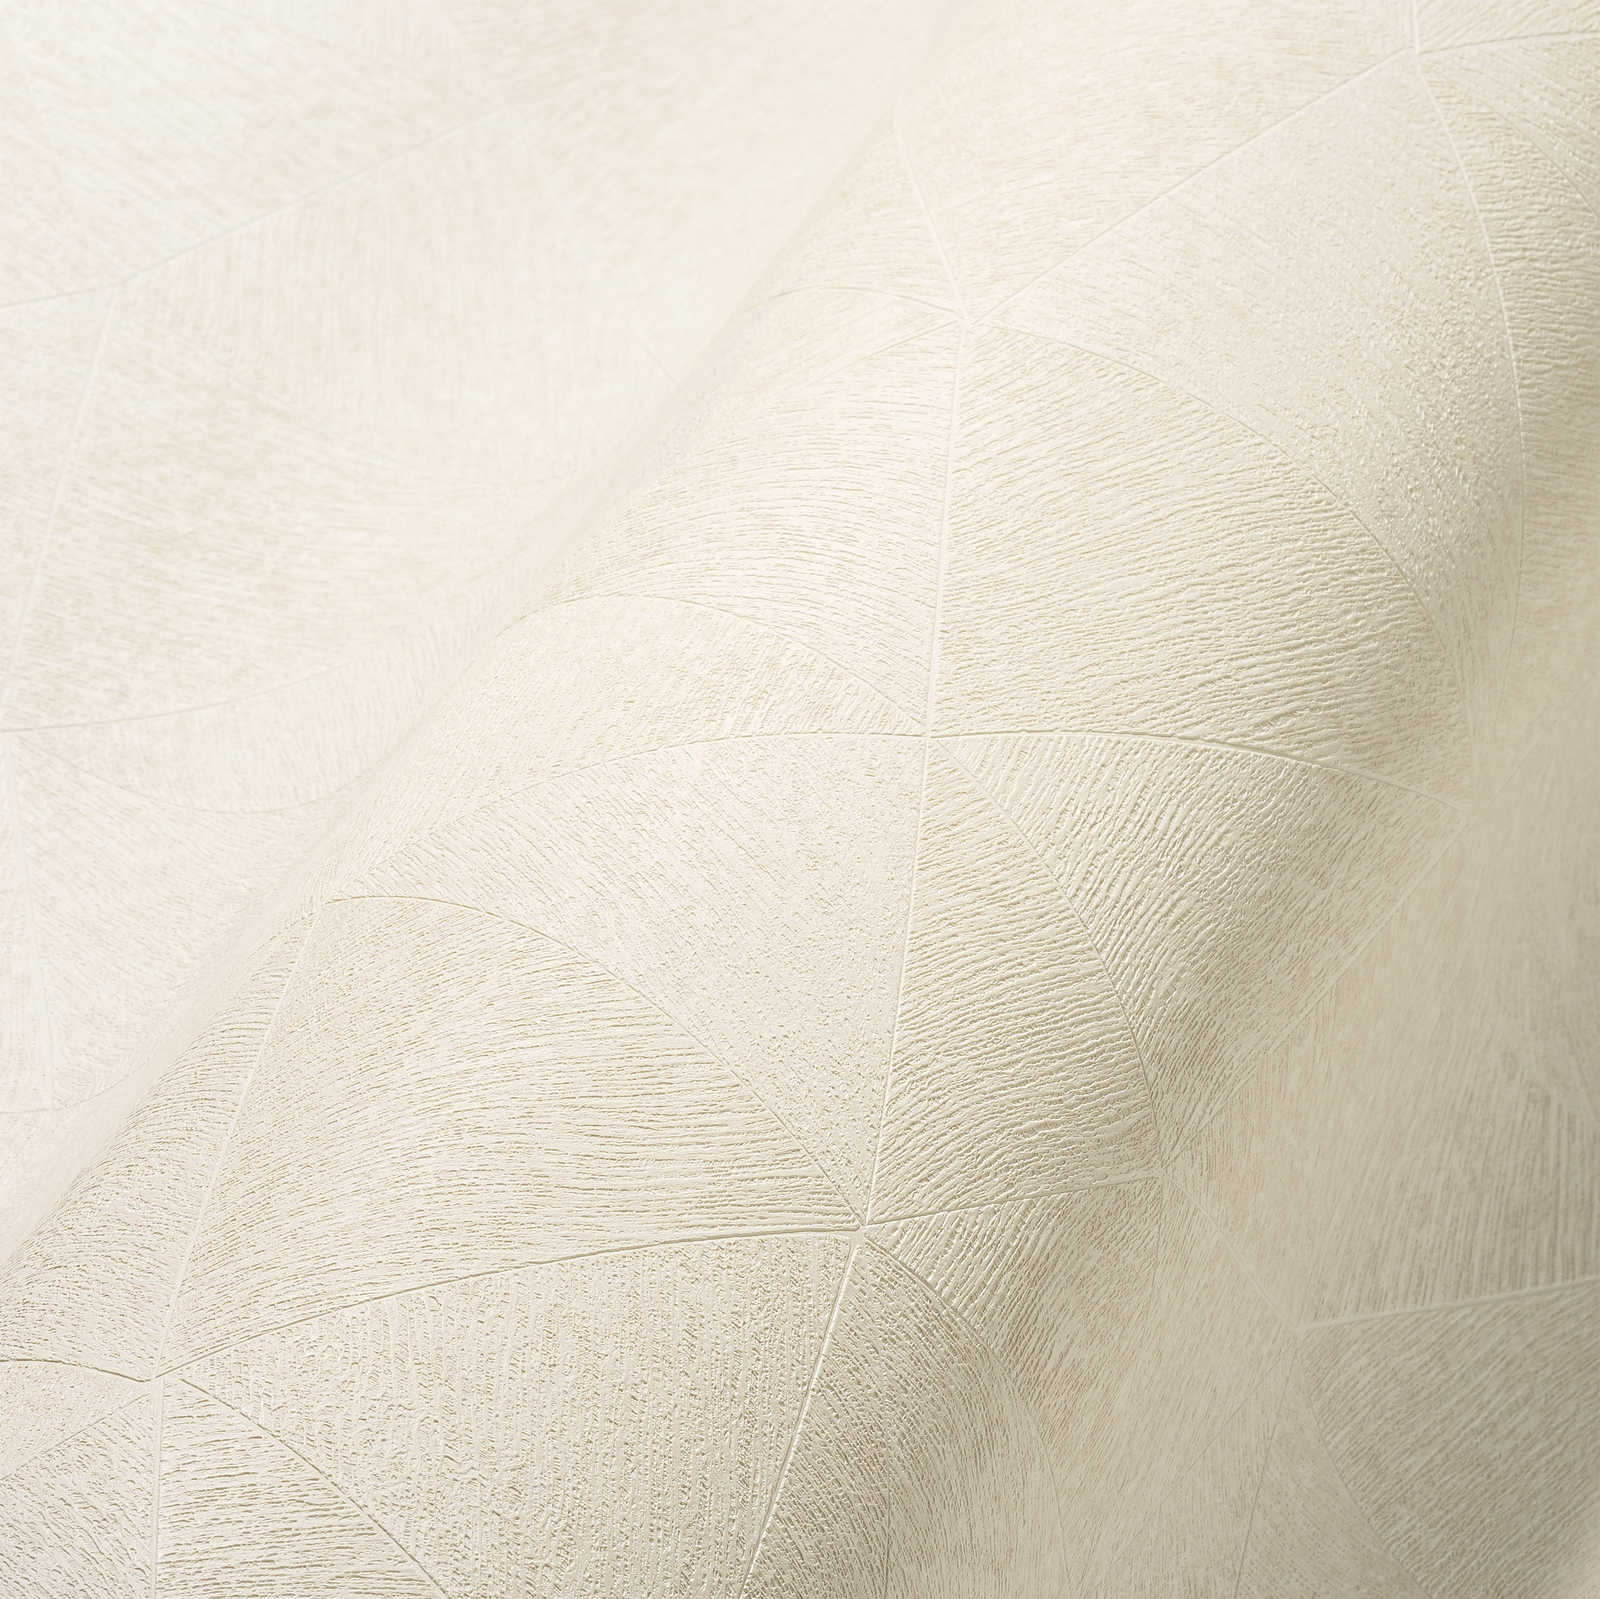             Papel pintado tejido-no tejido con motivos claros - blanco
        